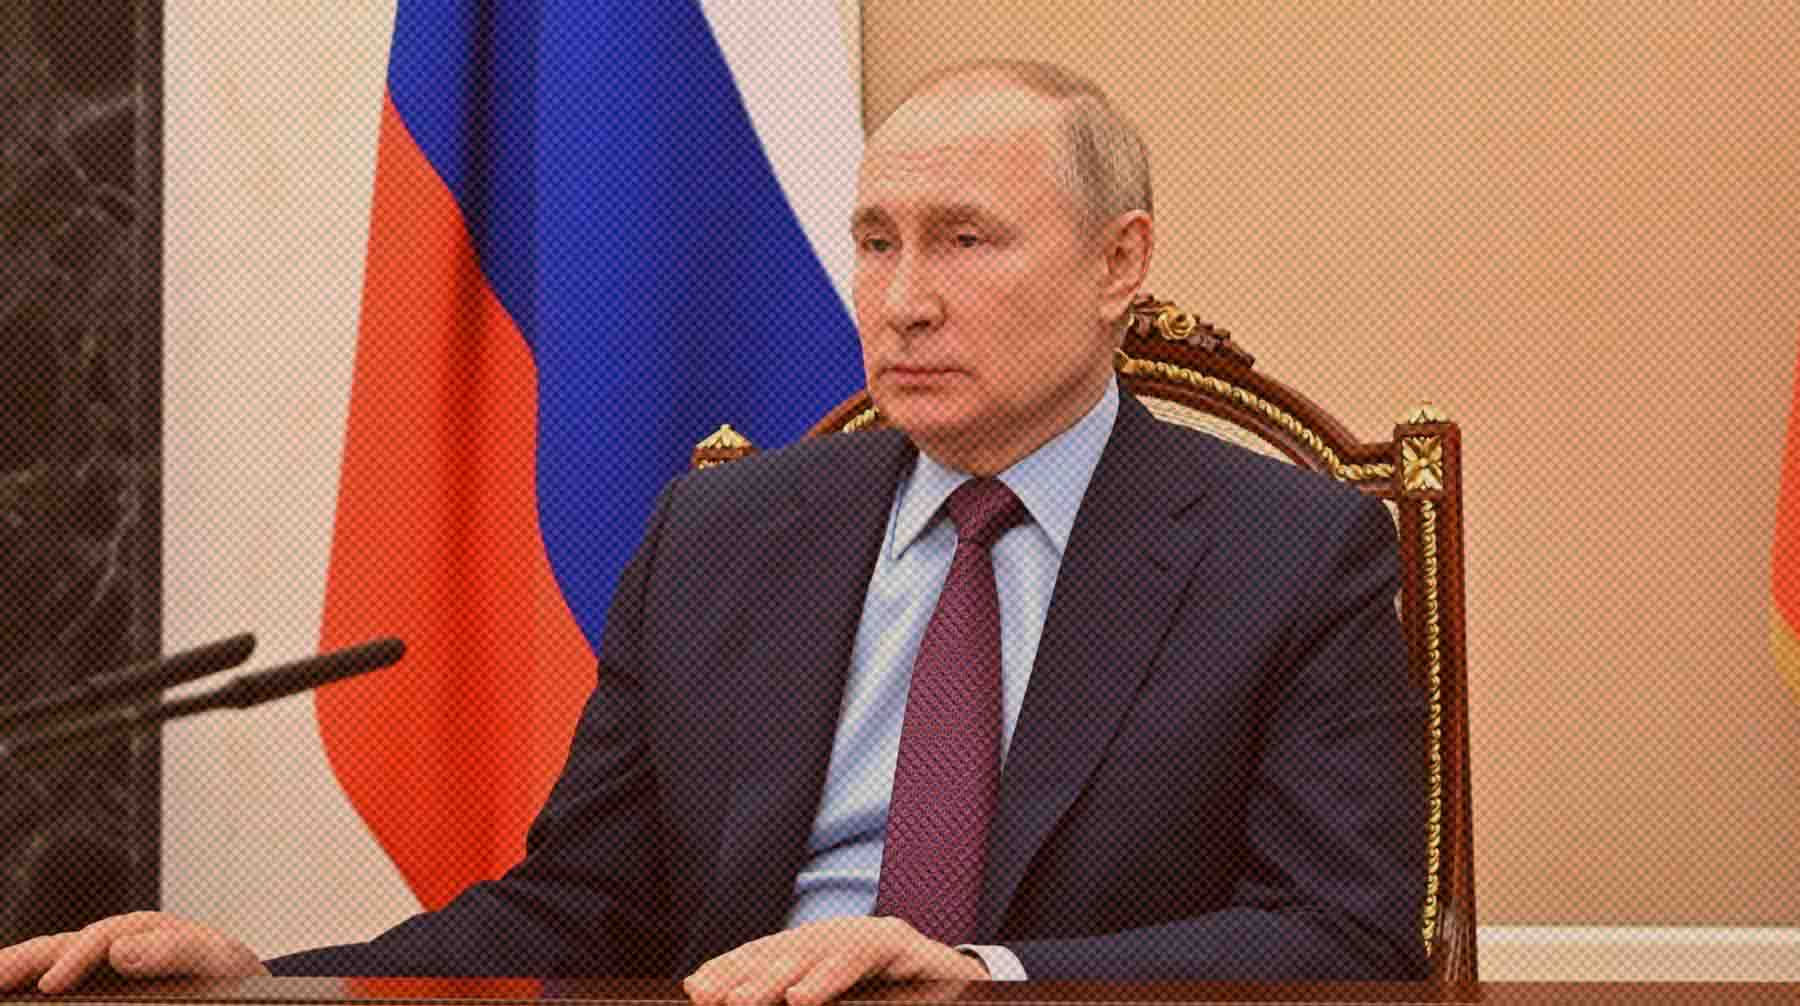 Вячеслав Володин уточнил, что обращение к российском лидеру будет направлено «незамедлительно» Фото: Global Look Press / Kremlin Pool